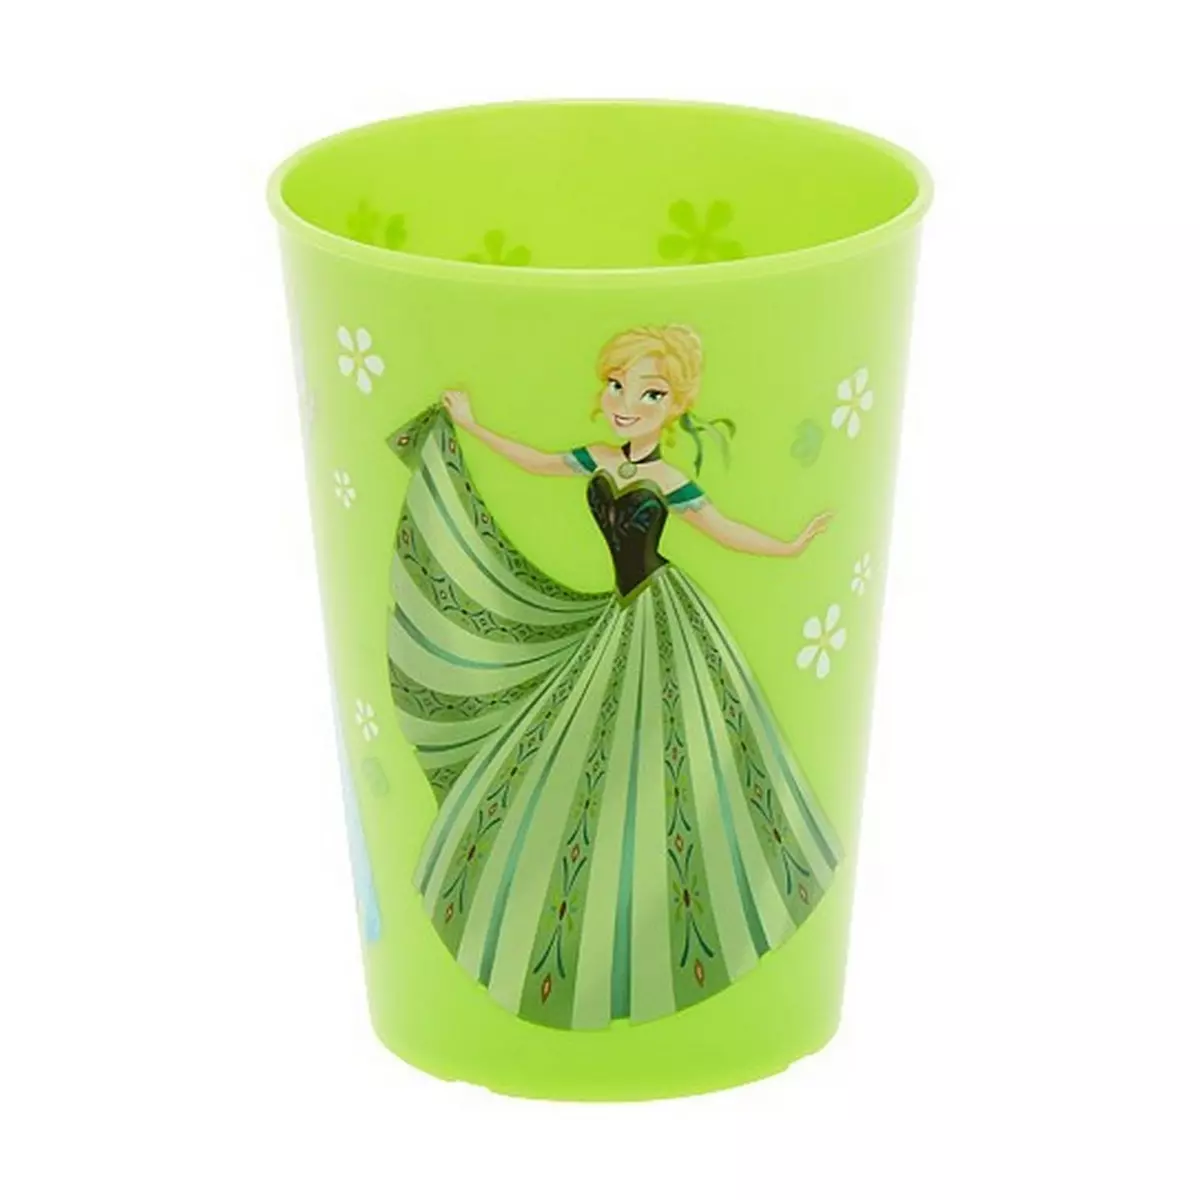  Gobelet La Reine des neiges verre plastique Frozen vert